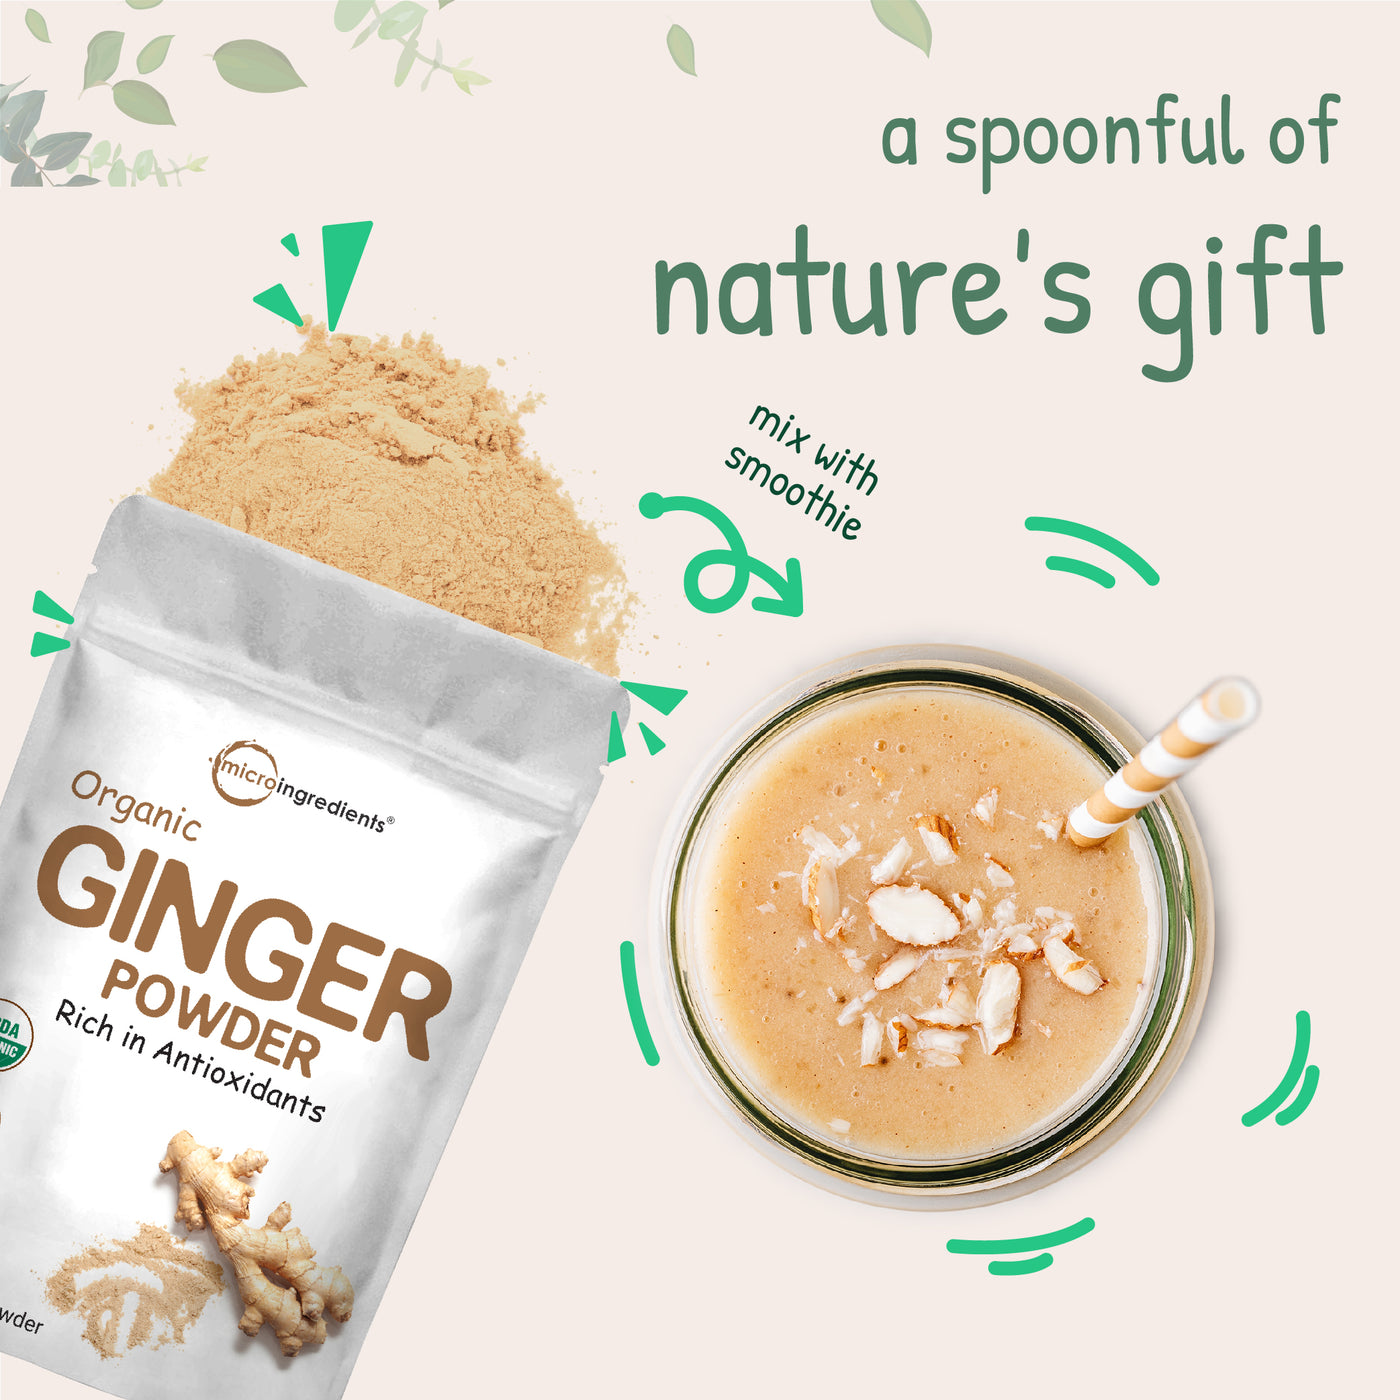 Organic Ginger Powder Nature's Gift